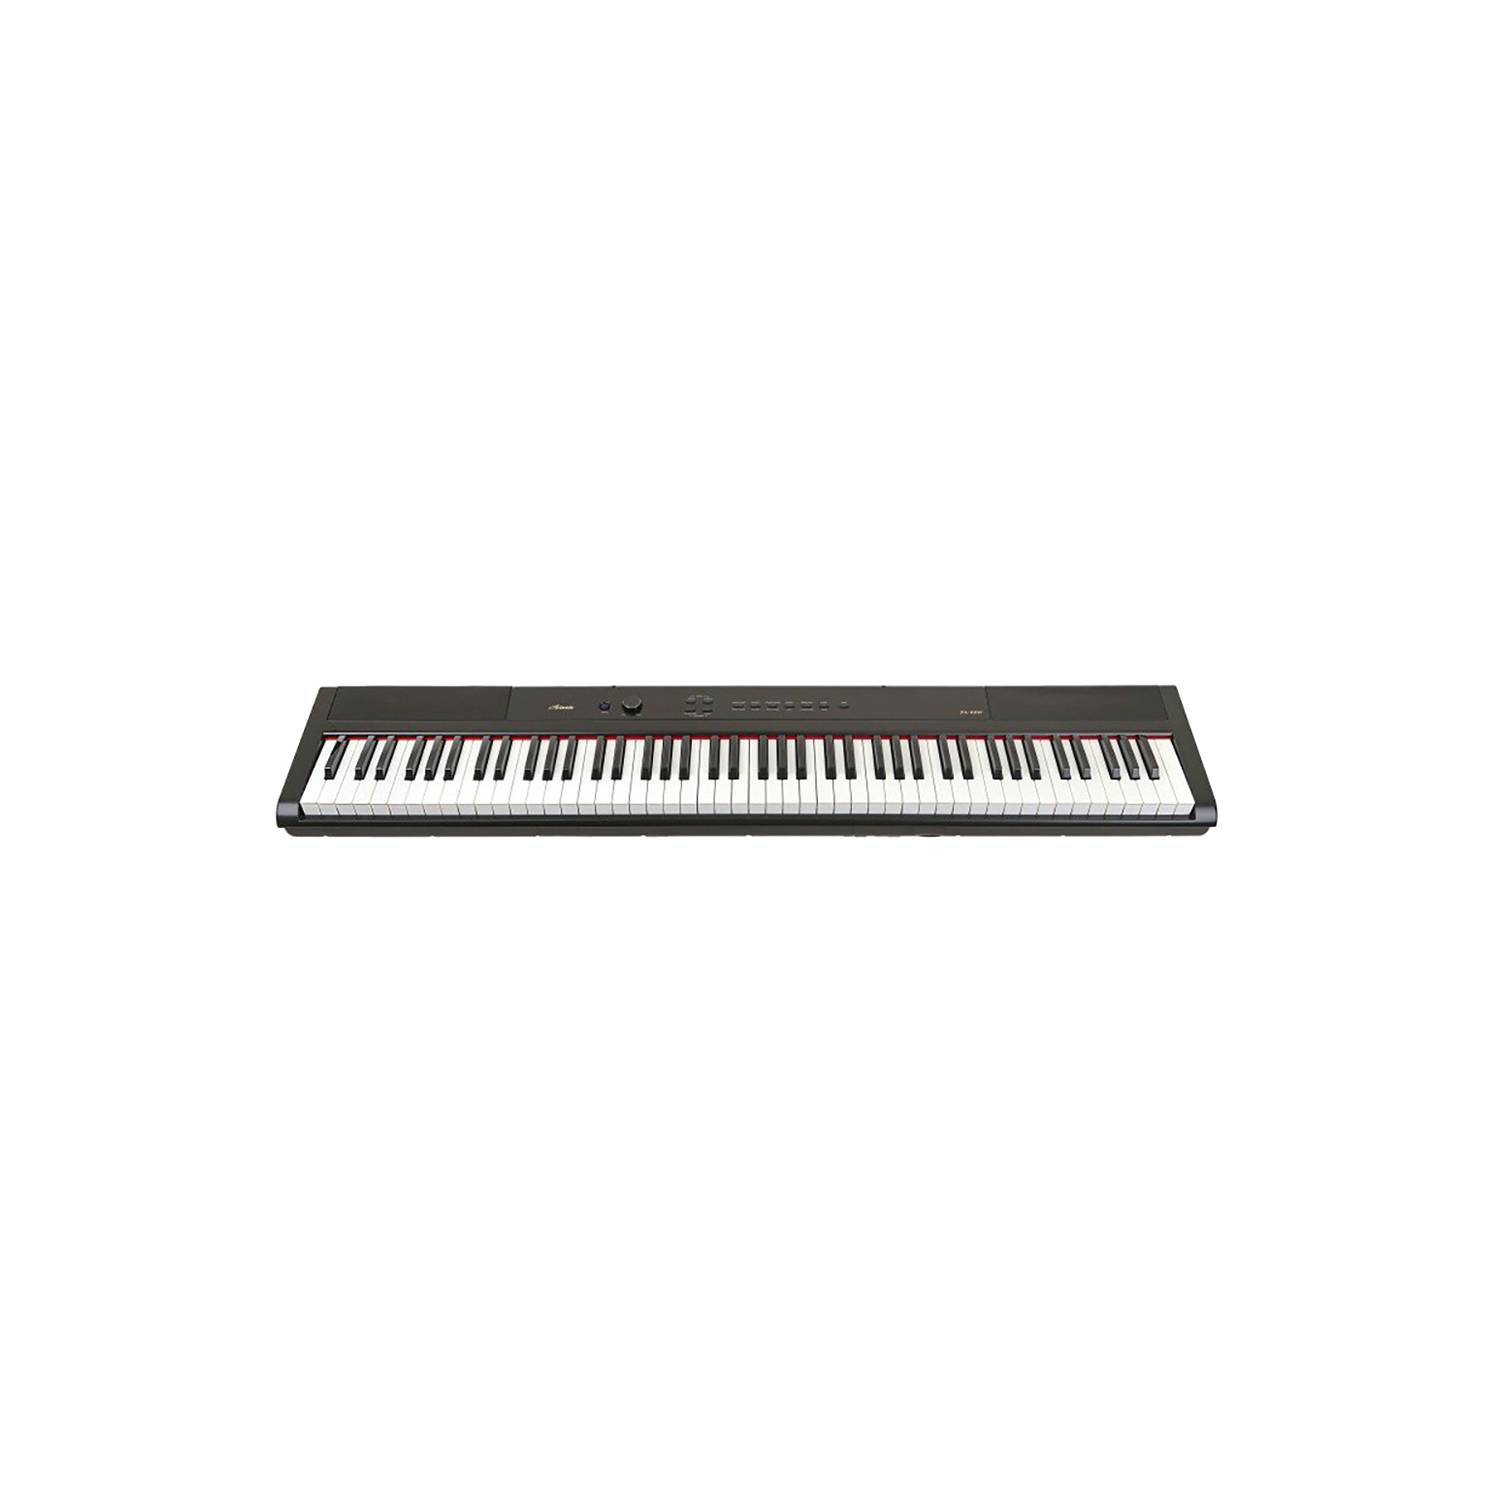 Motear Imperativo tienda de comestibles ARTESIA Piano eléctrico 88 teclas artesia performer | falabella.com